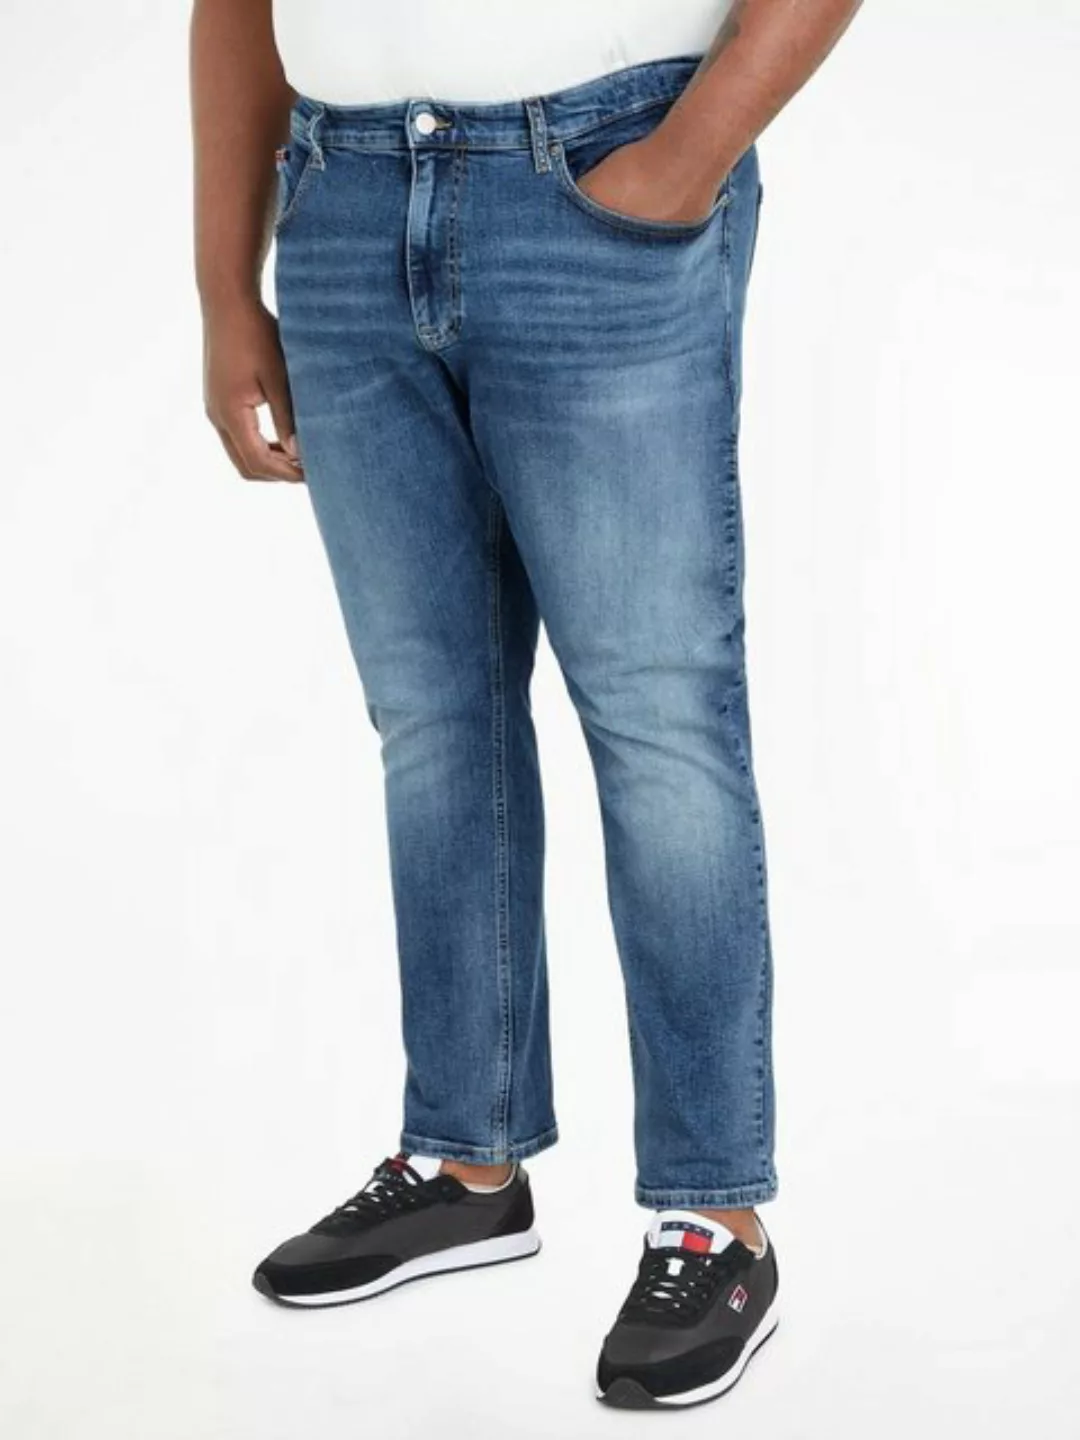 Tommy Jeans Plus 5-Pocket-Jeans AUSTIN PLUS DG1219 in großen Größen günstig online kaufen